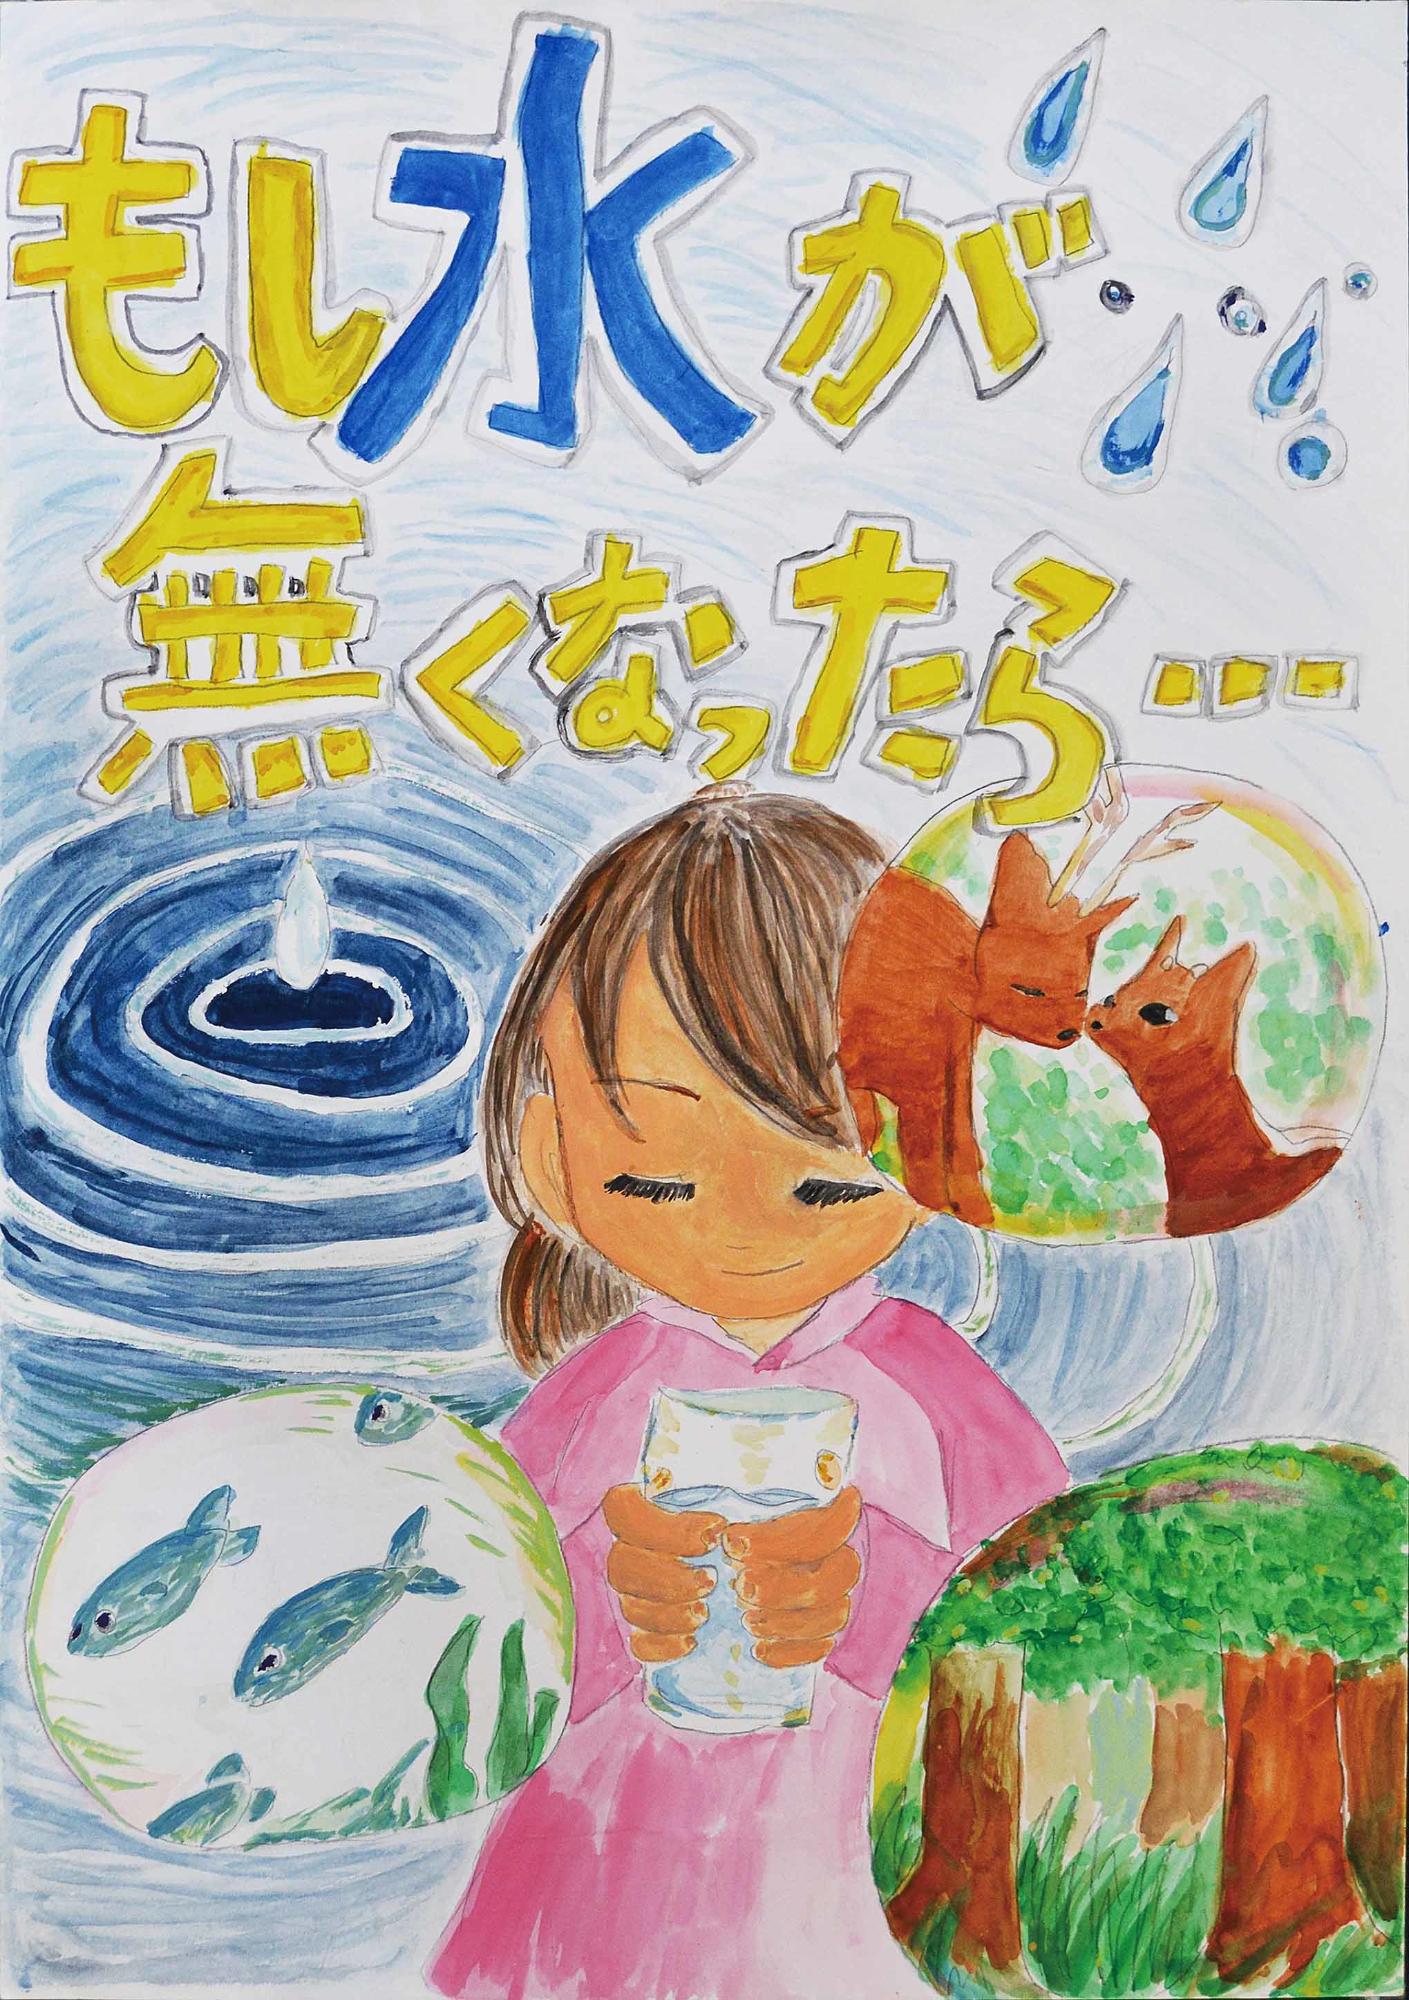 入選作品 佐倉東小学校 6年 松岡彩佳さん（もし水が無くなったら…、中央に水が入ったコップを持っている女の子、その周りに動物や魚、森林が描かれている）